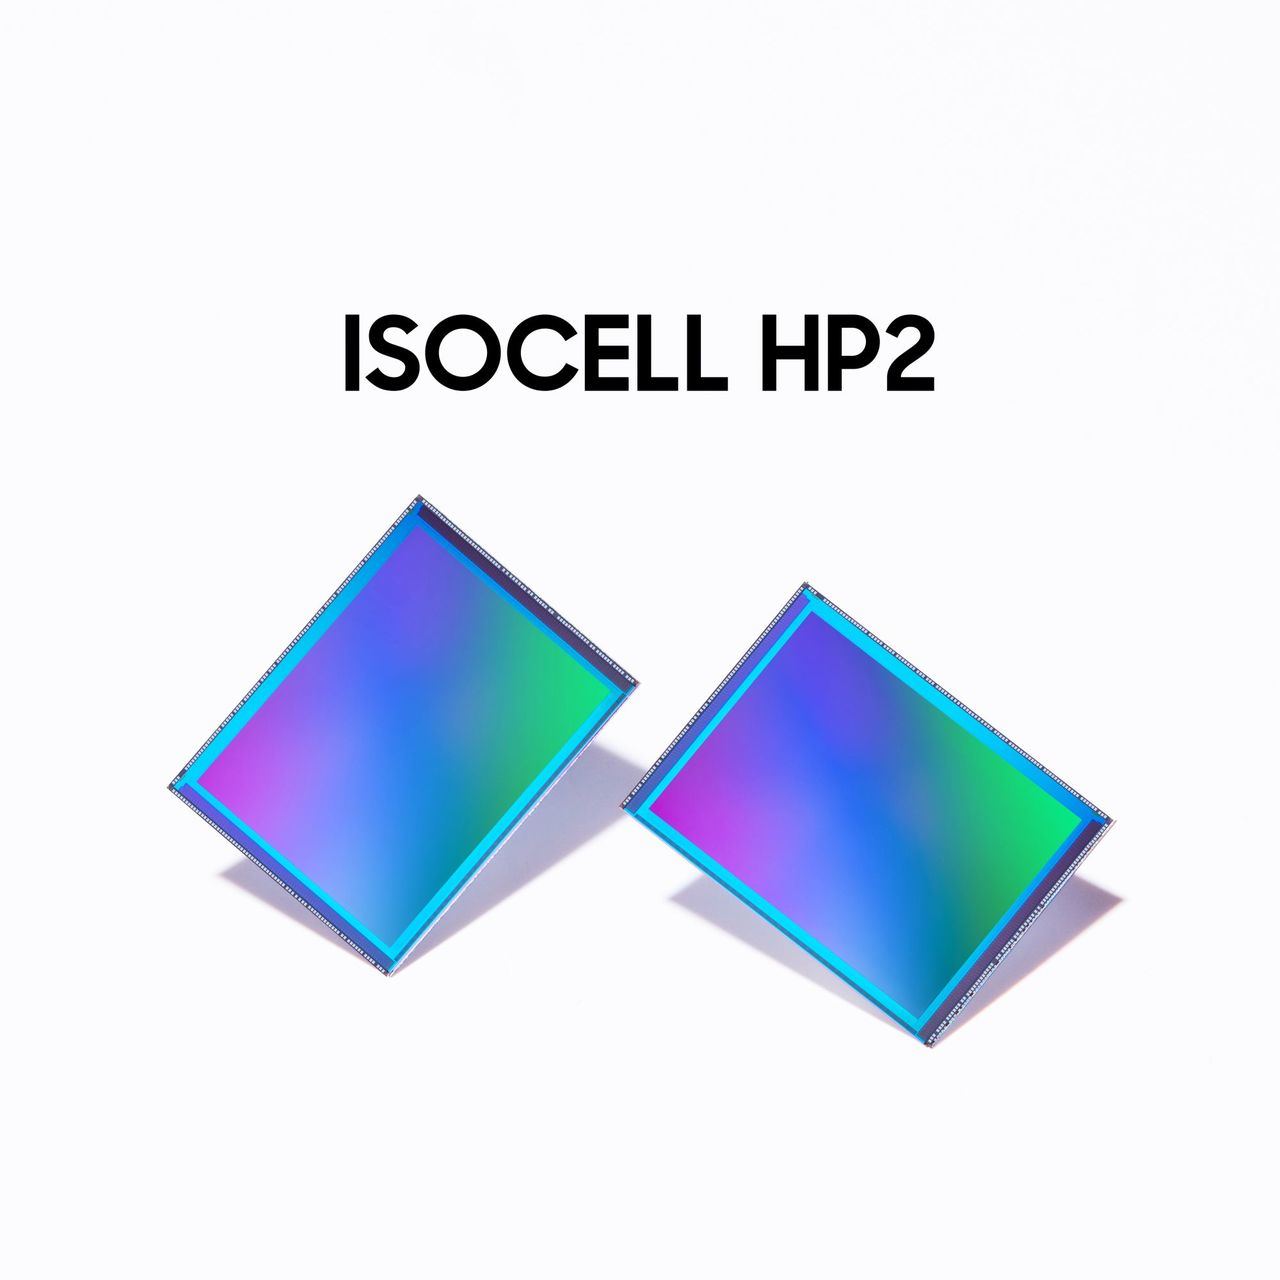 Descubre el nuevo sensor Isocell HP2 de Samsung con hasta 200 megapíxeles